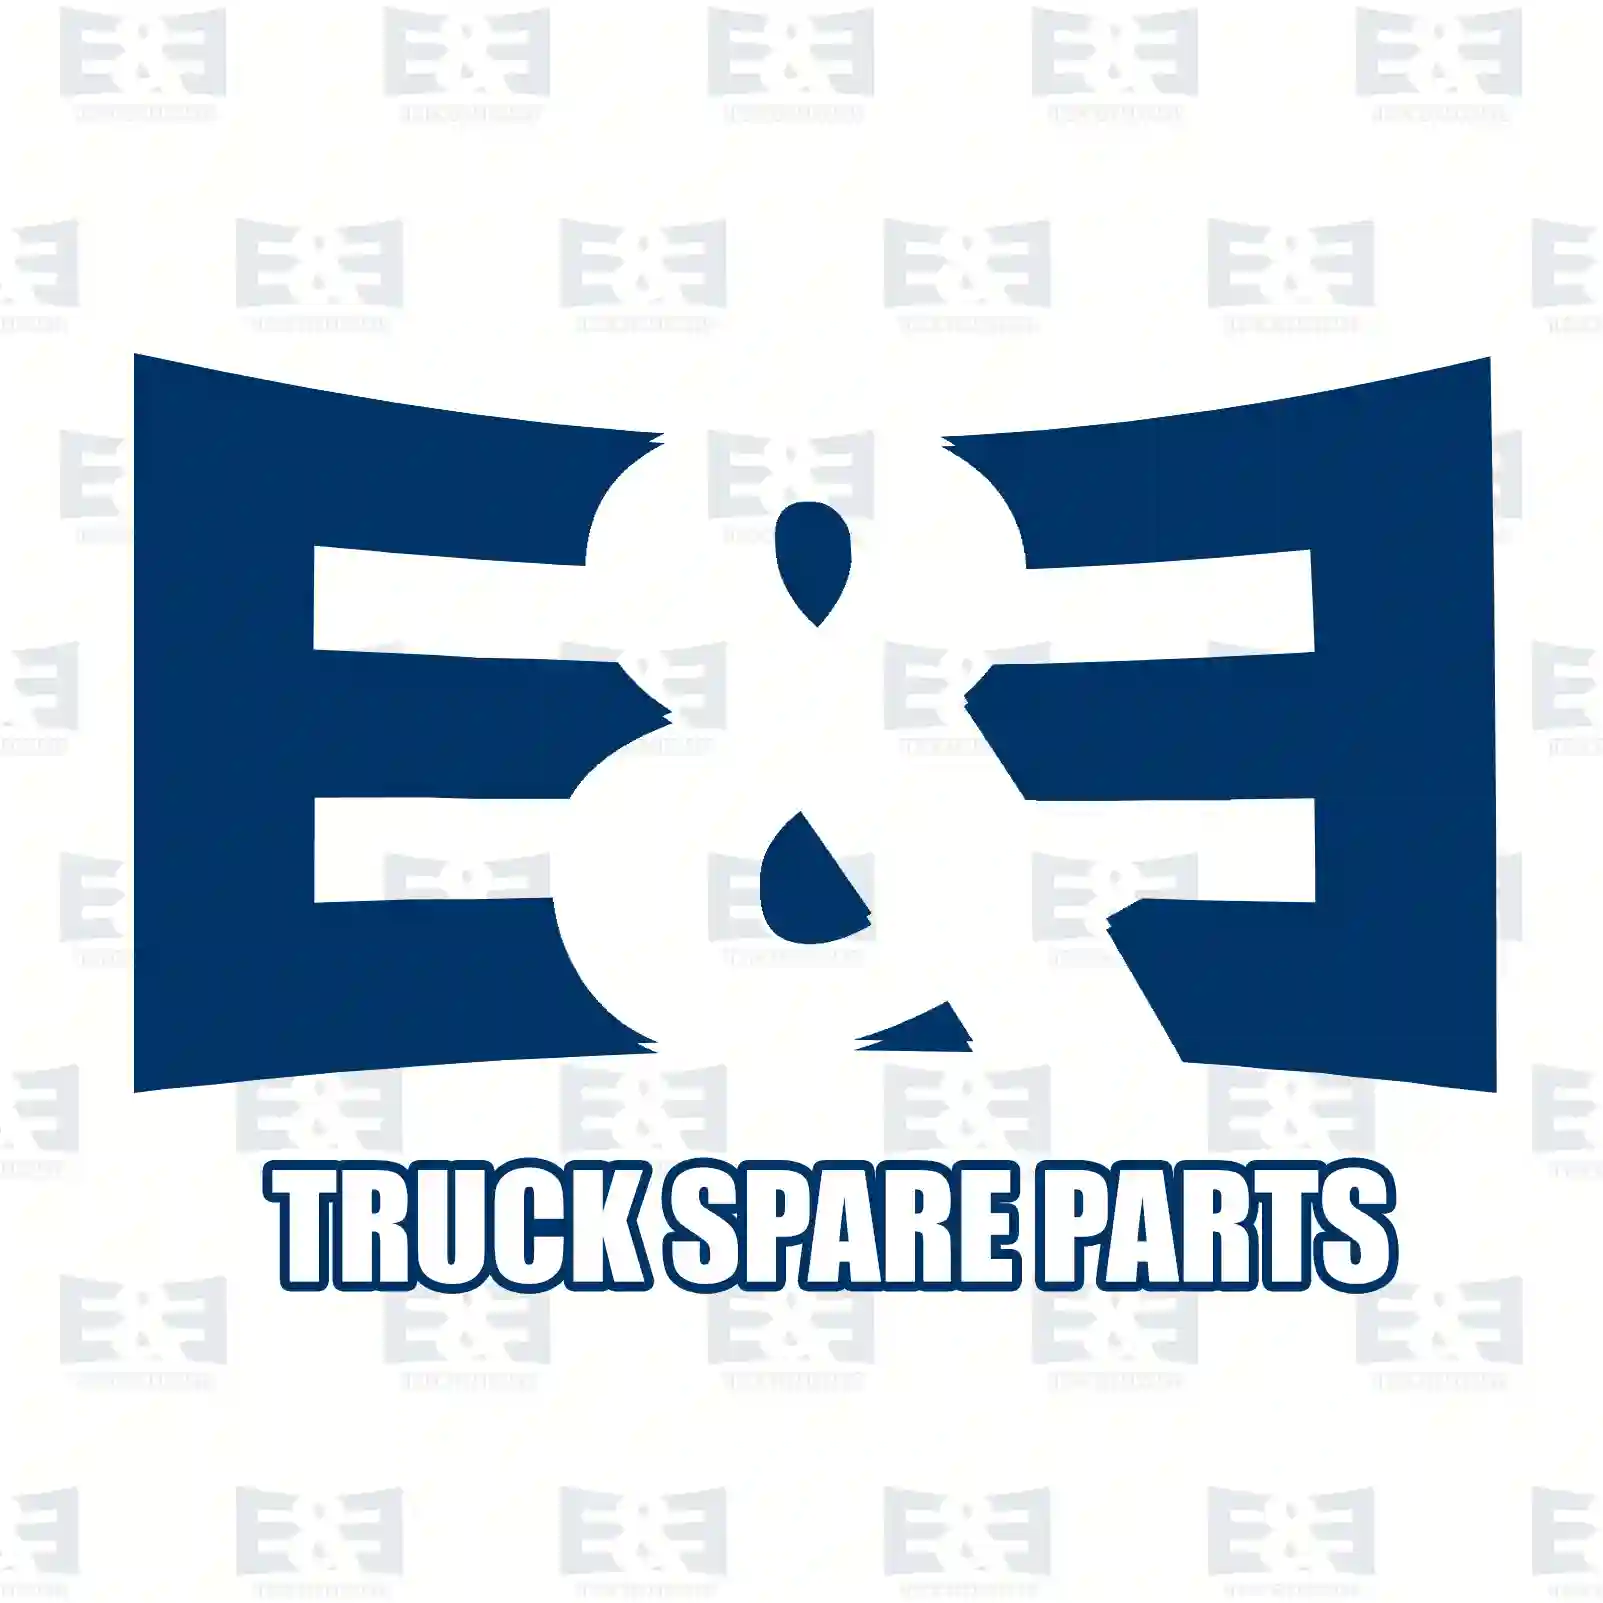 O-ring, 2E2286176, 06569390028, 06569390029, 51965010007 ||  2E2286176 E&E Truck Spare Parts | Truck Spare Parts, Auotomotive Spare Parts O-ring, 2E2286176, 06569390028, 06569390029, 51965010007 ||  2E2286176 E&E Truck Spare Parts | Truck Spare Parts, Auotomotive Spare Parts